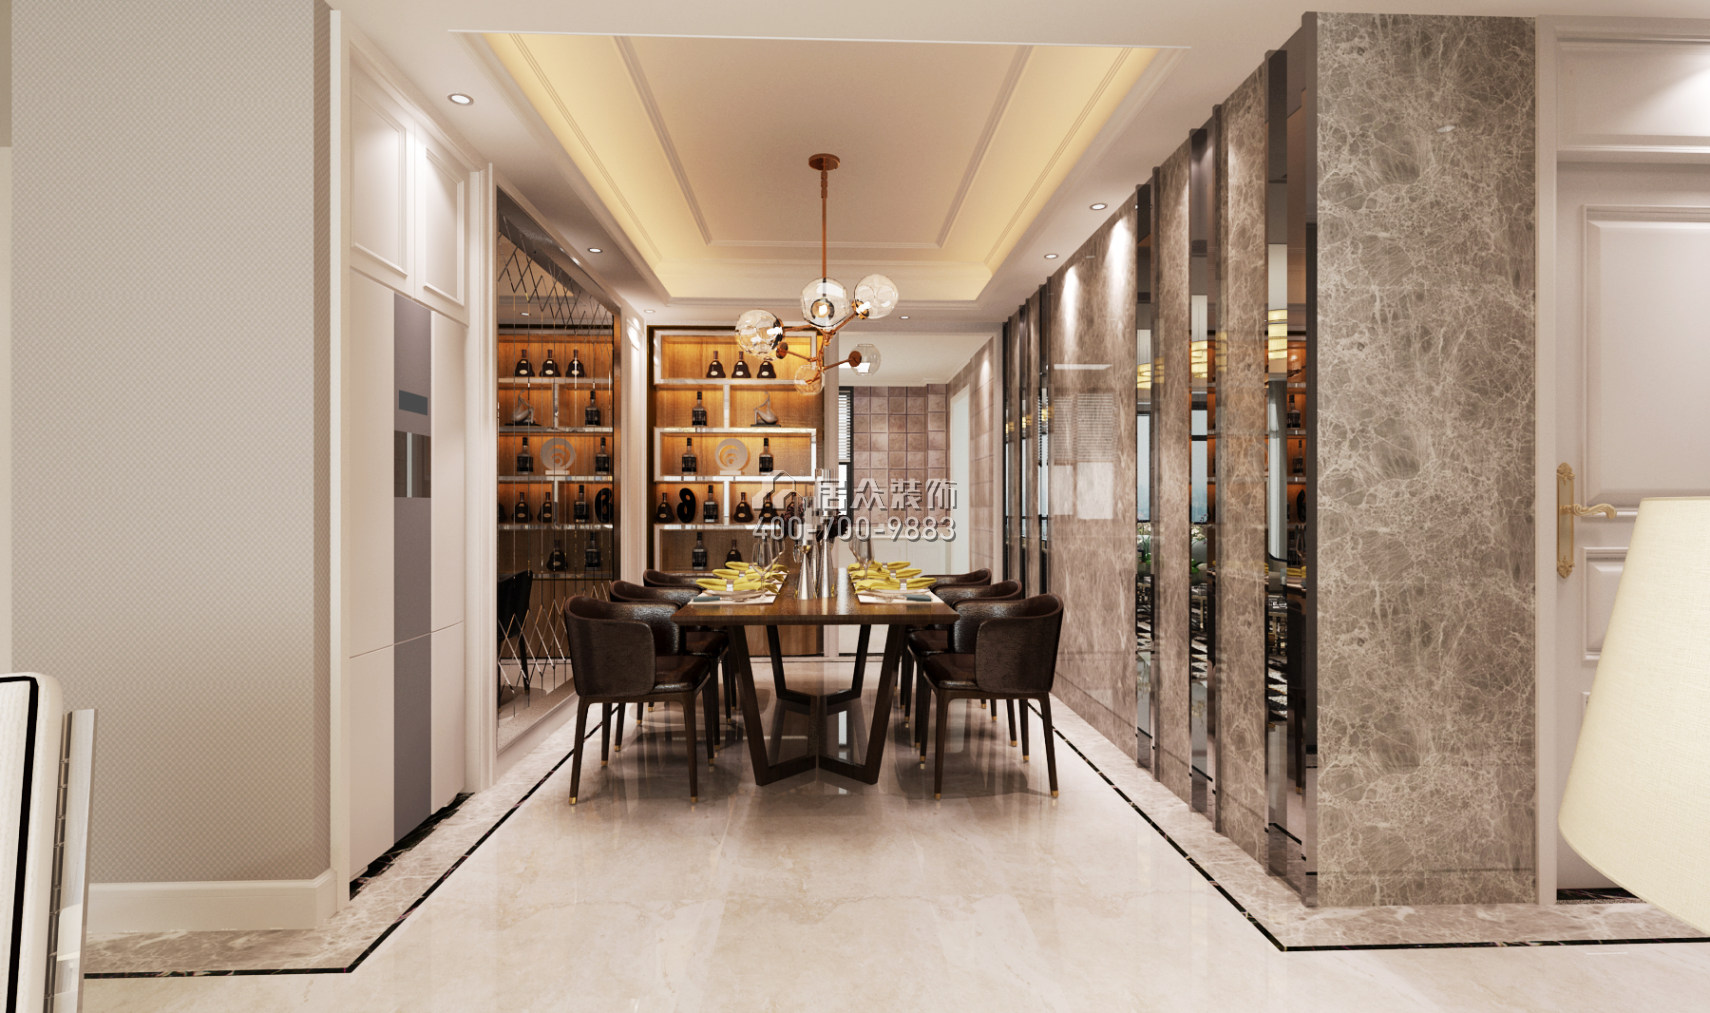 常德万达广场140平方米现代简约风格平层户型餐厅装修效果图